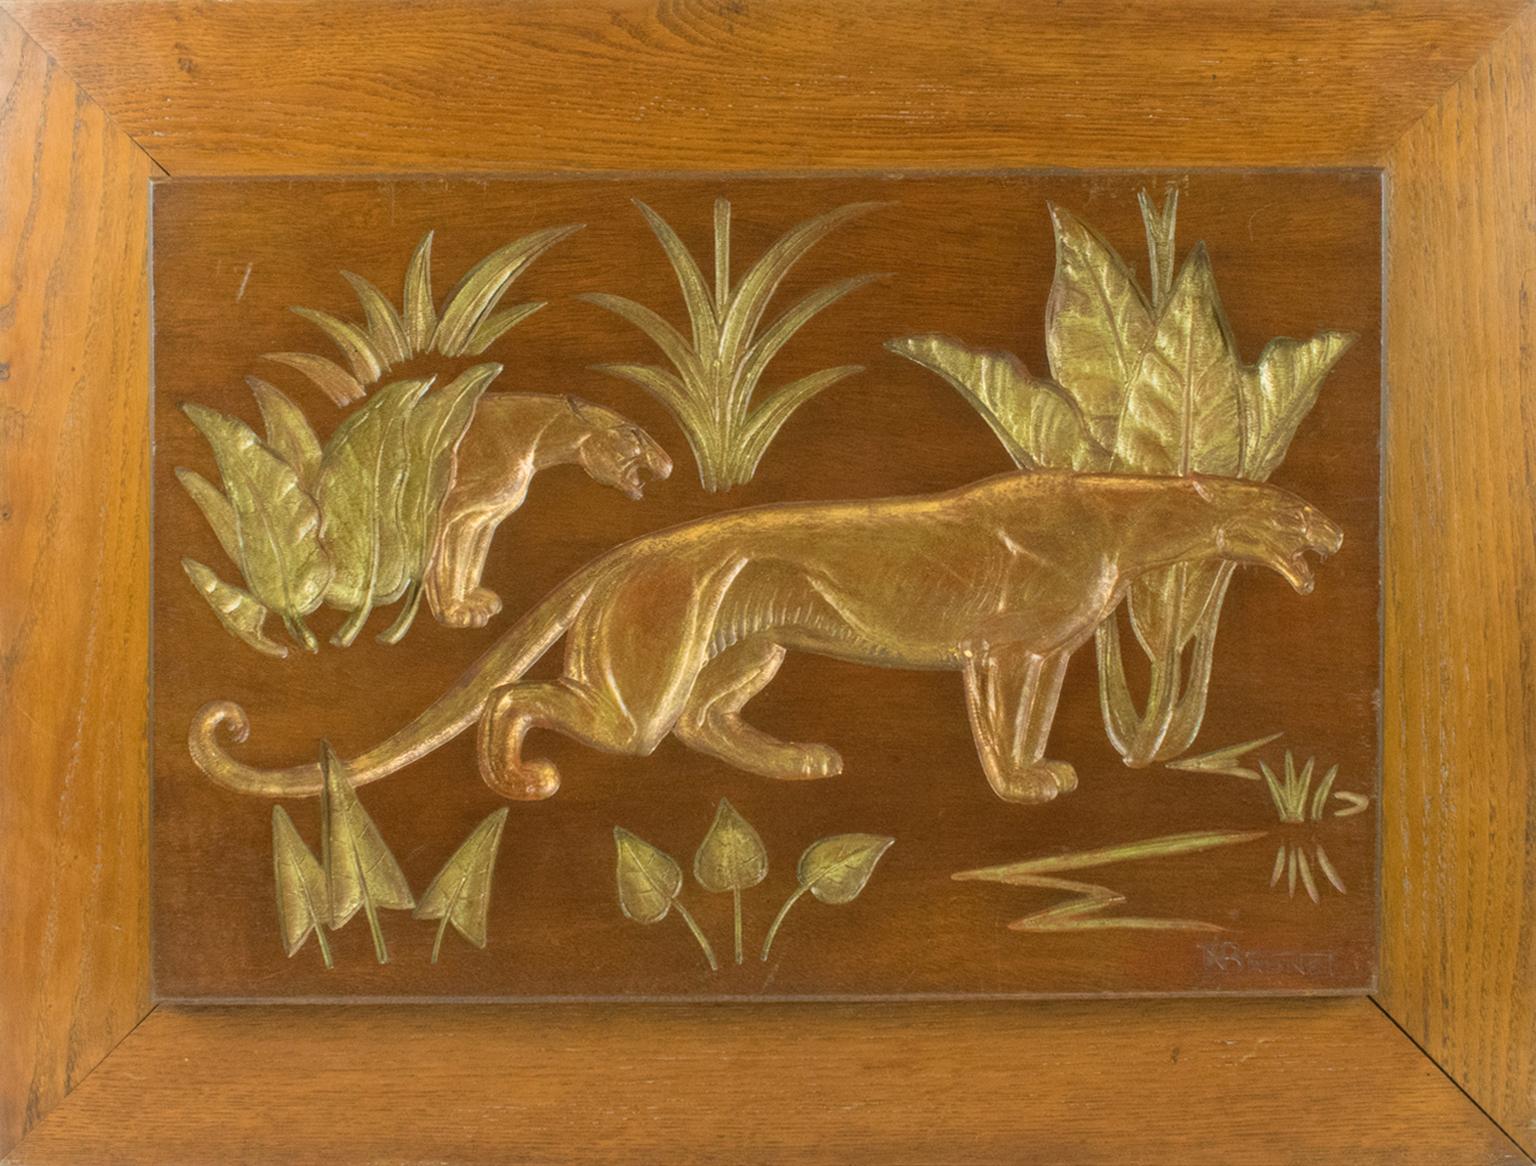 Panthers in the Jungle, geschnitzte vergoldete Holztafel im Art déco-Stil von N. R. Brunet